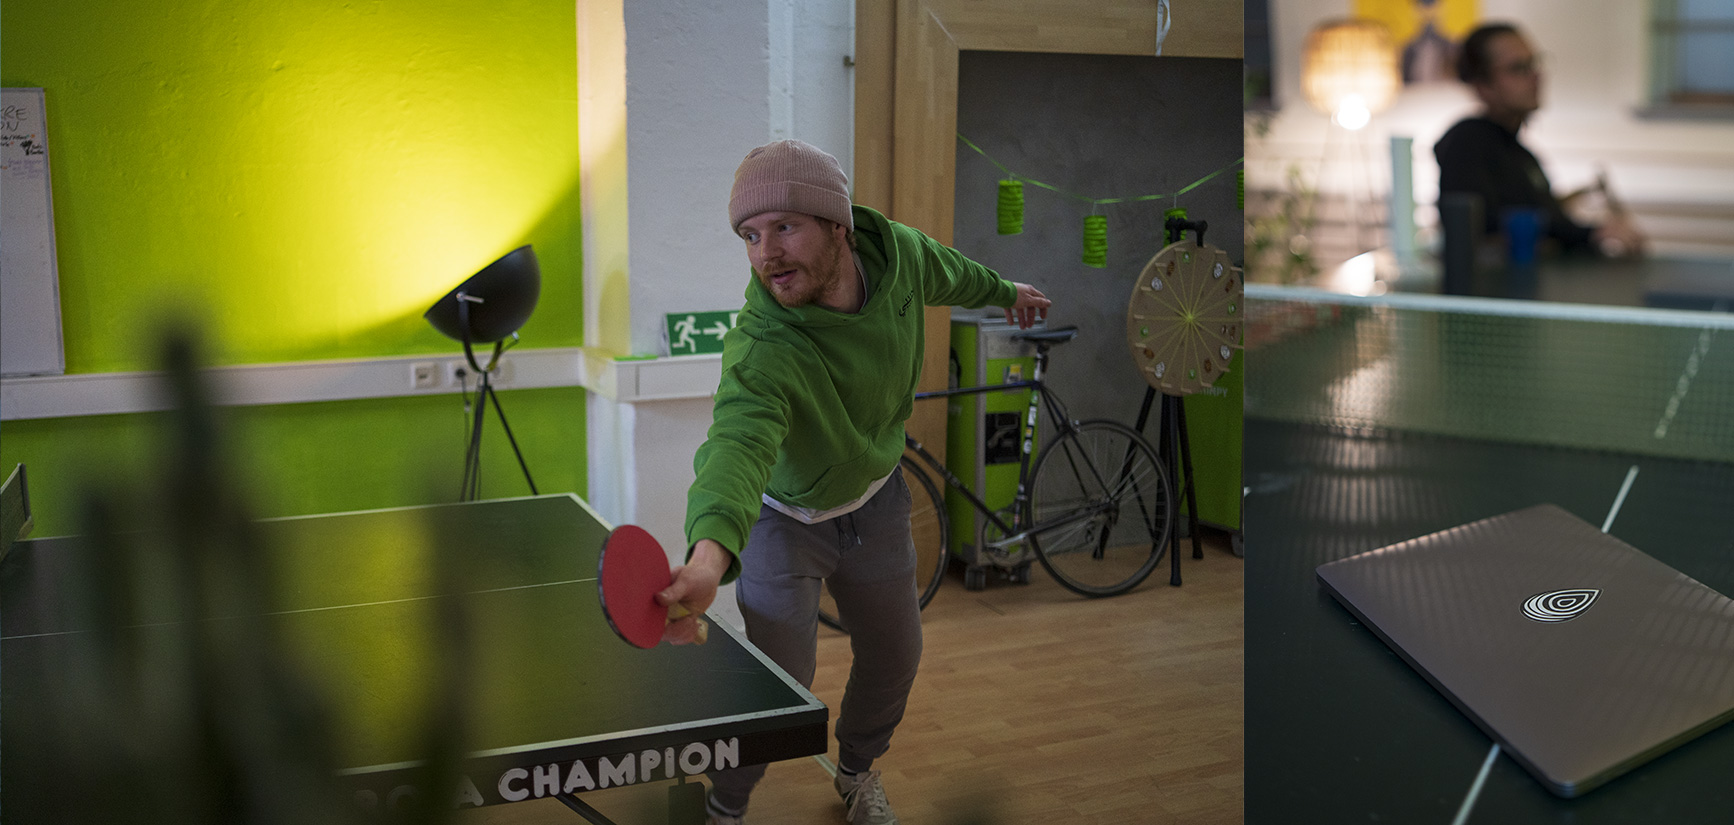 fynn beim tischtennis spielen im chimpy büro grüner habibi pulli laptop mit regenholz logo sticker